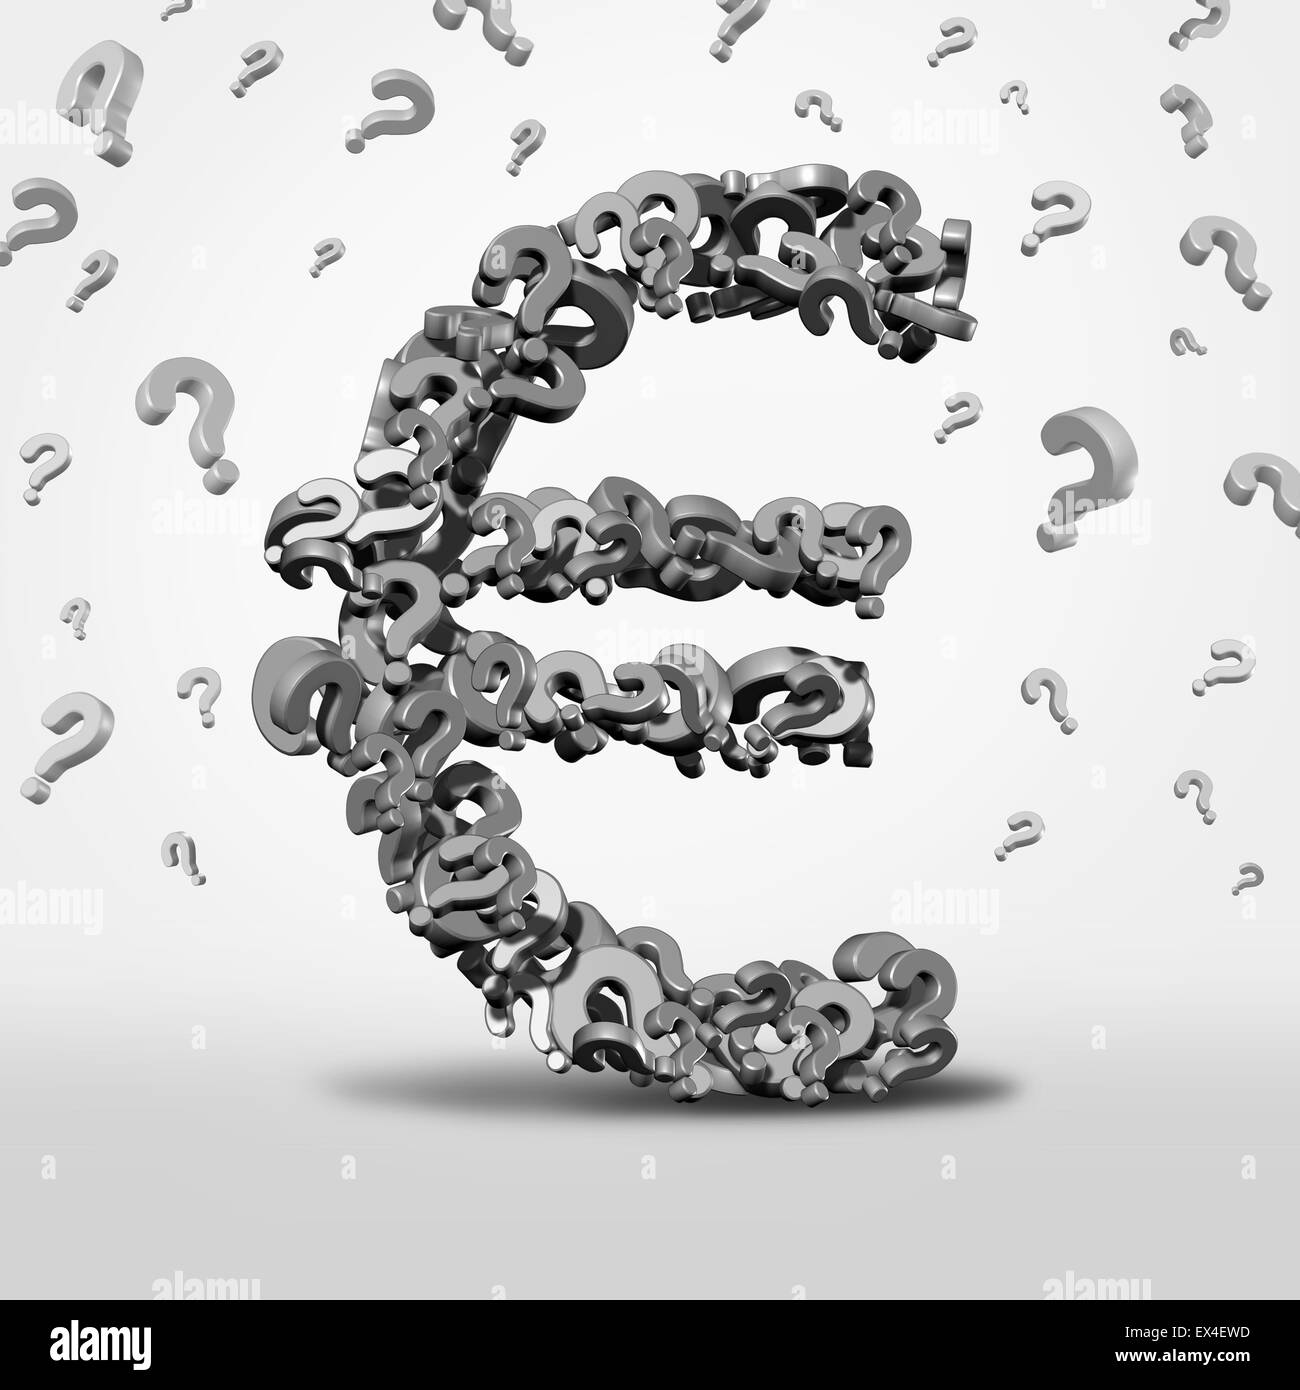 Euro Fragen und Verwirrung Konzept als Währungssymbol und Finanzprognose Symbol als ein europäisches Geld-Symbol einer Gruppe von Unsicherheit und Krise Prognoserisiko Fragezeichen gemacht. Stockfoto